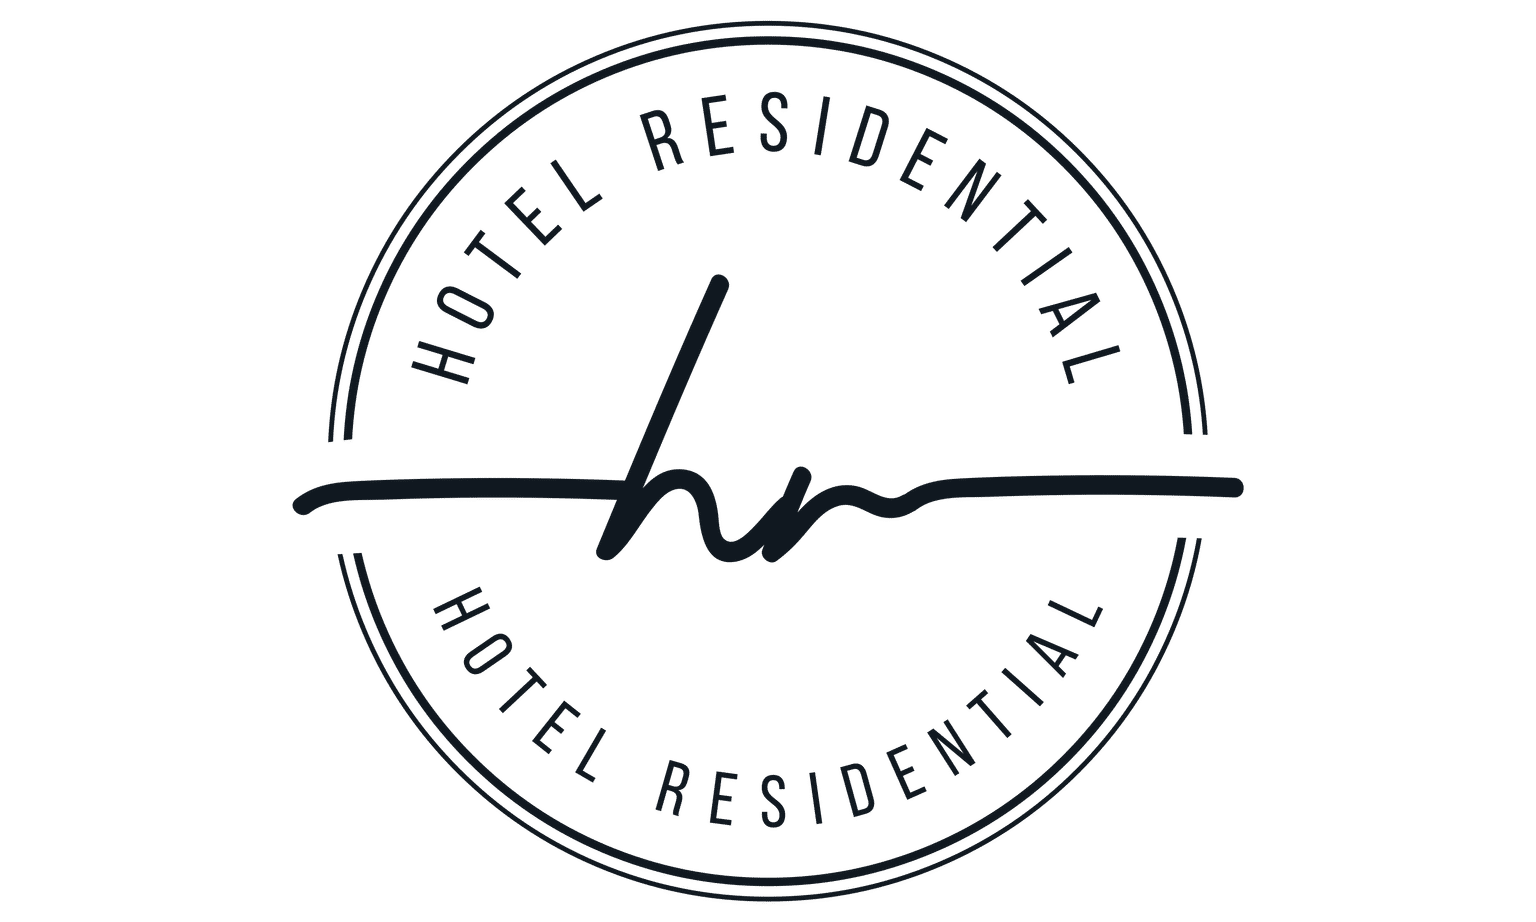 Hotel Residential of Denver